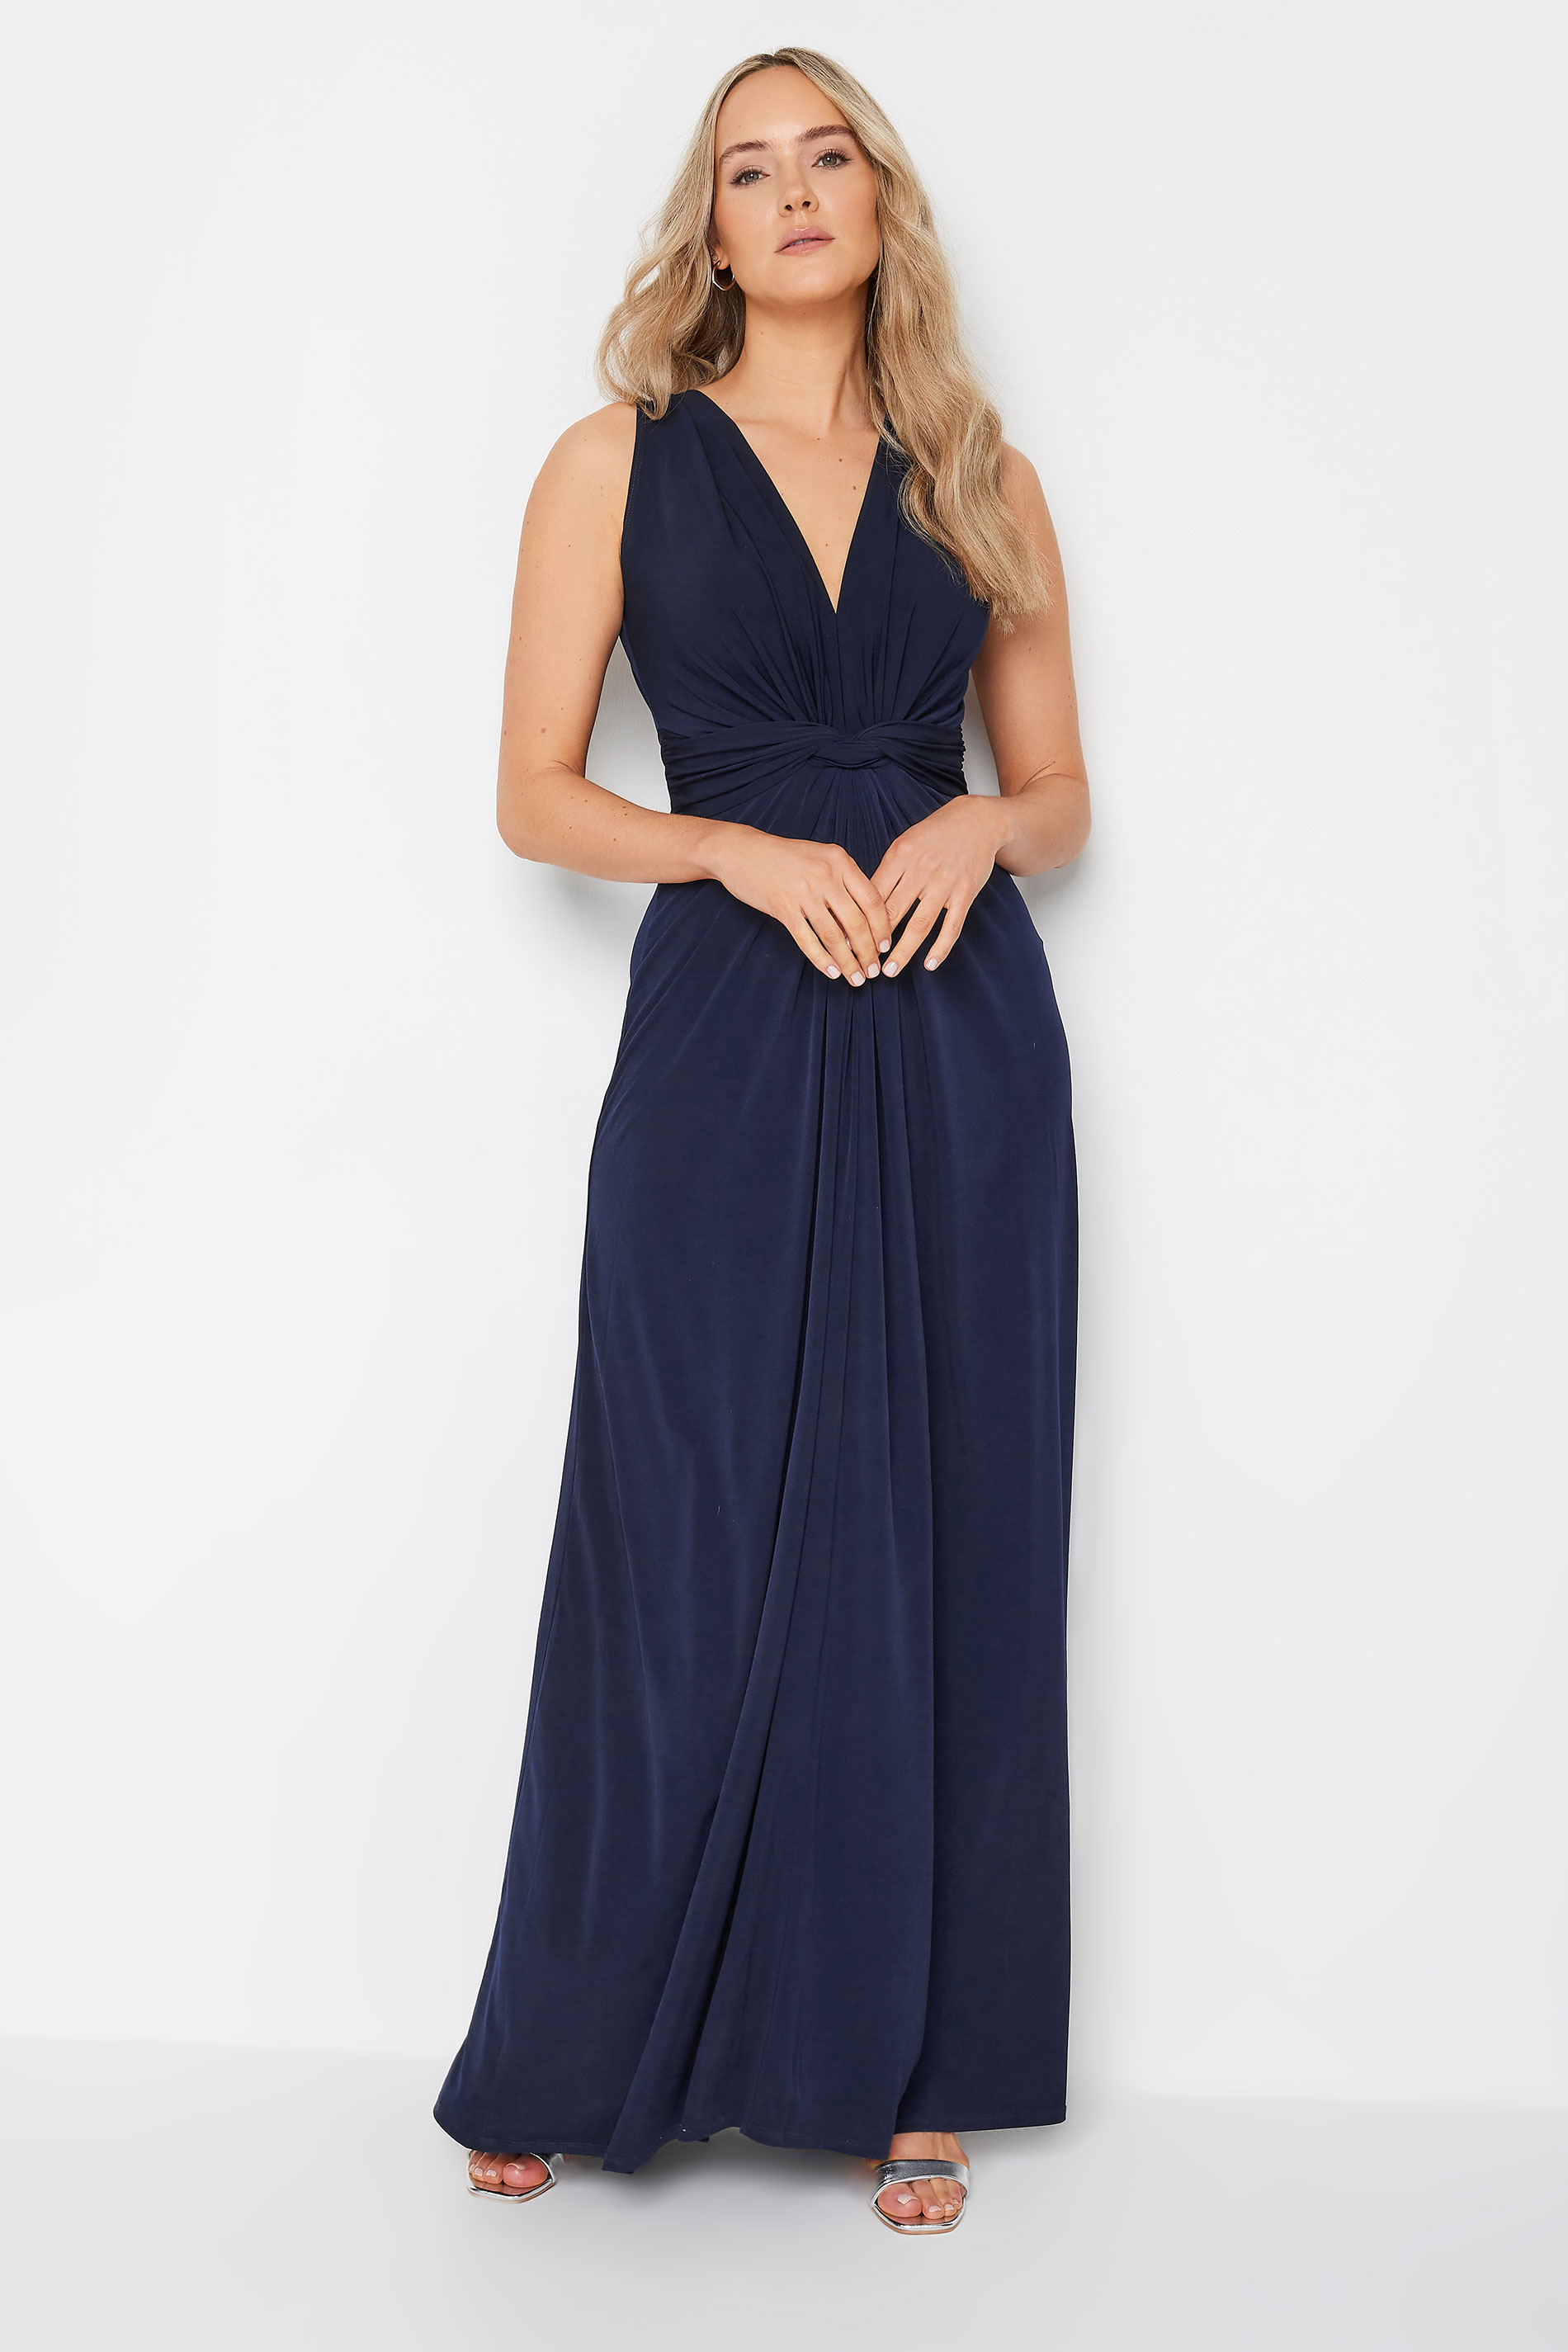 LTS Tall Womens Navy Blue Knot Front Maxi Dress | Long Tall Sally 1